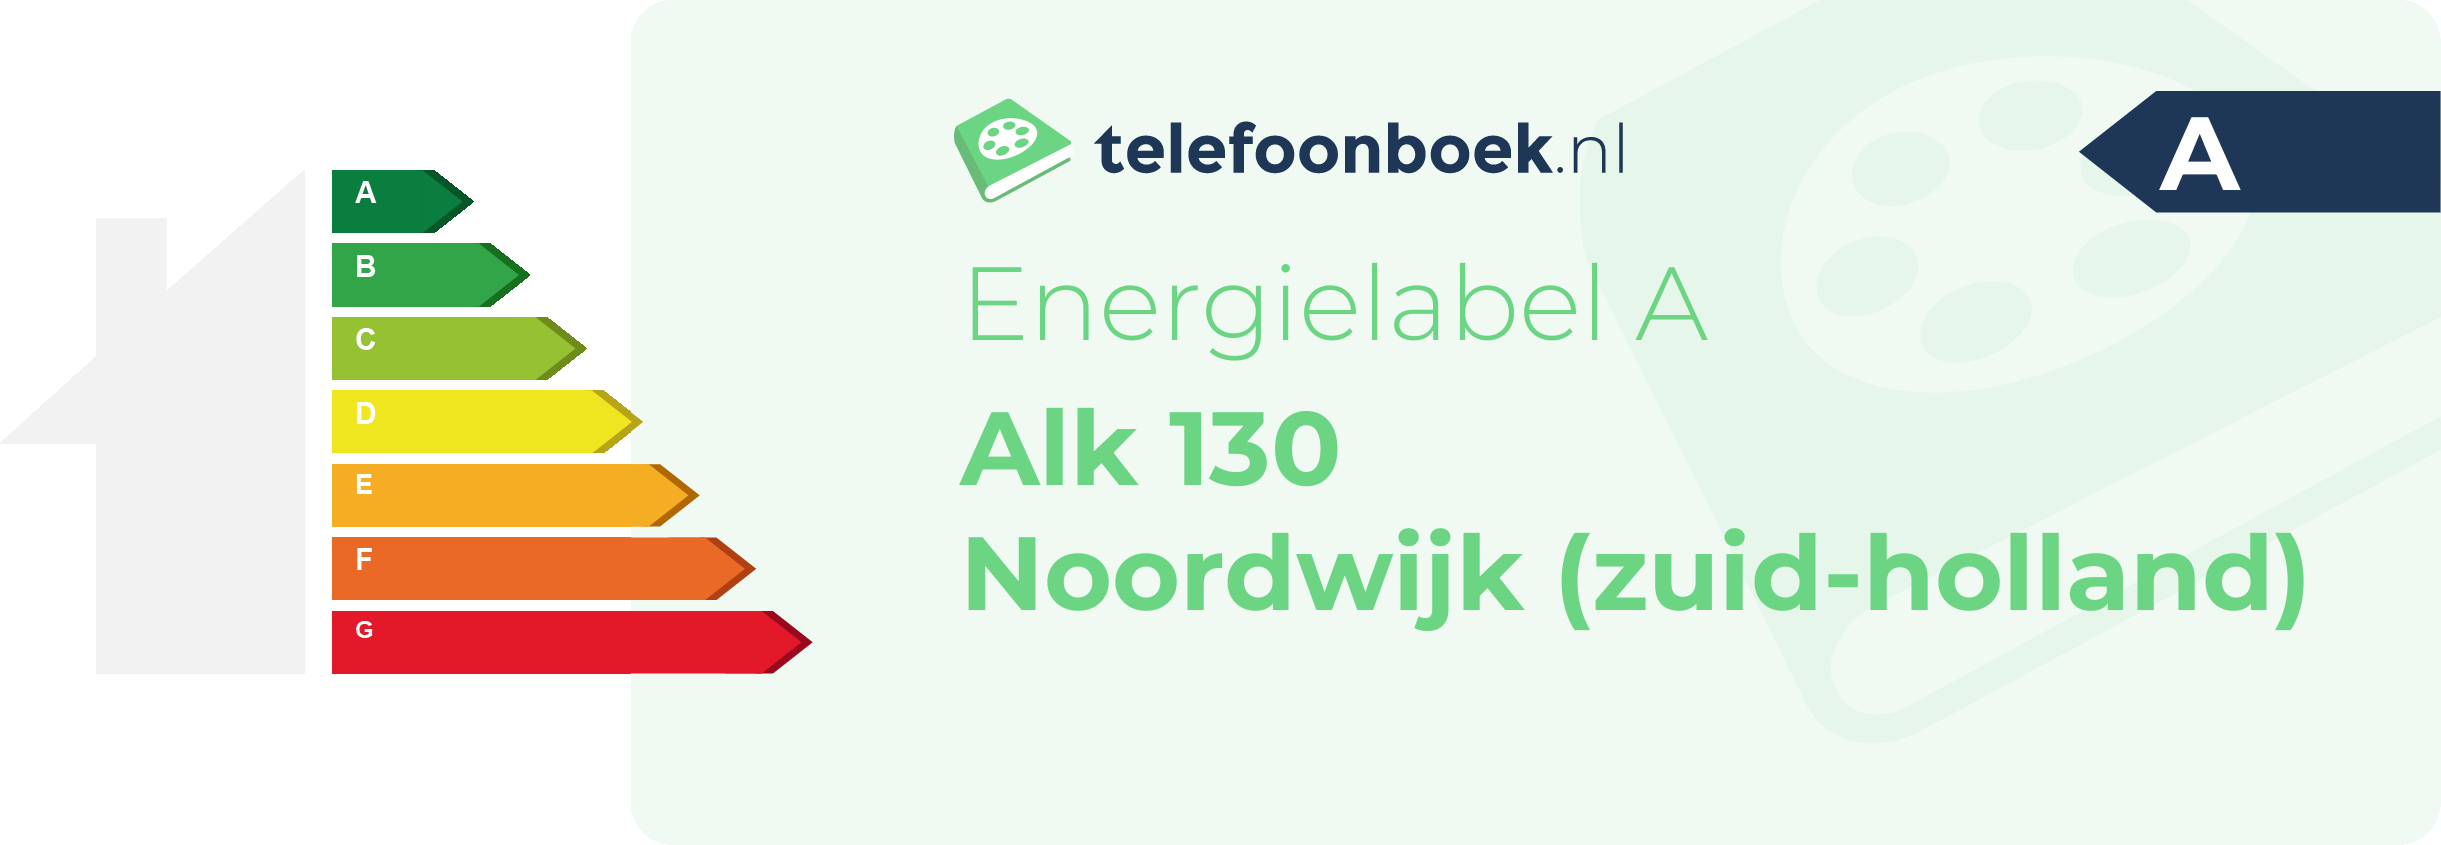 Energielabel Alk 130 Noordwijk (Zuid-Holland)